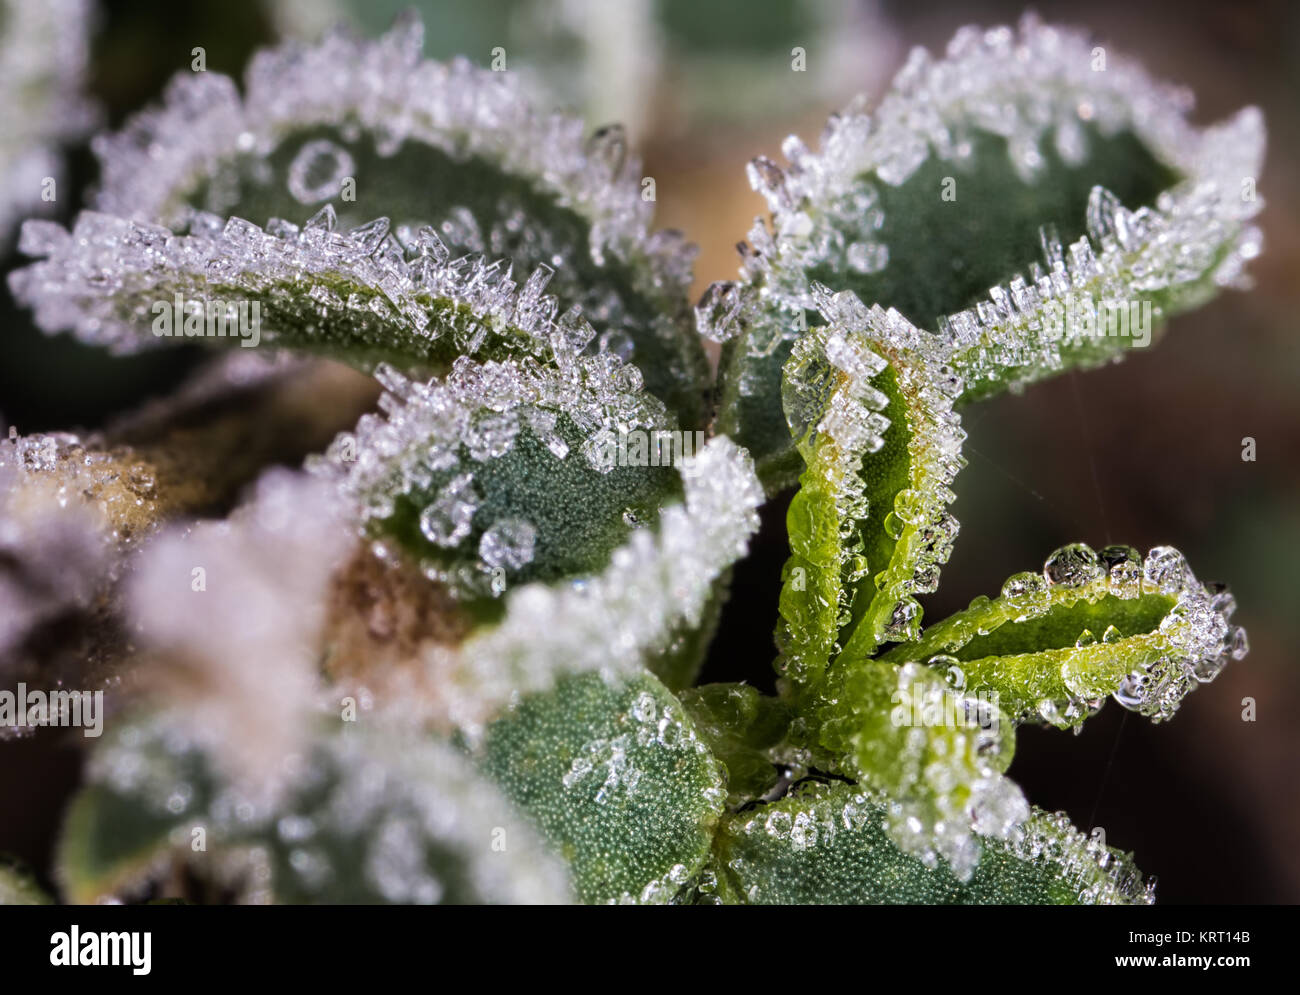 La glace naturelle photographié dans une plante sauvage après une nuit froide. Banque D'Images